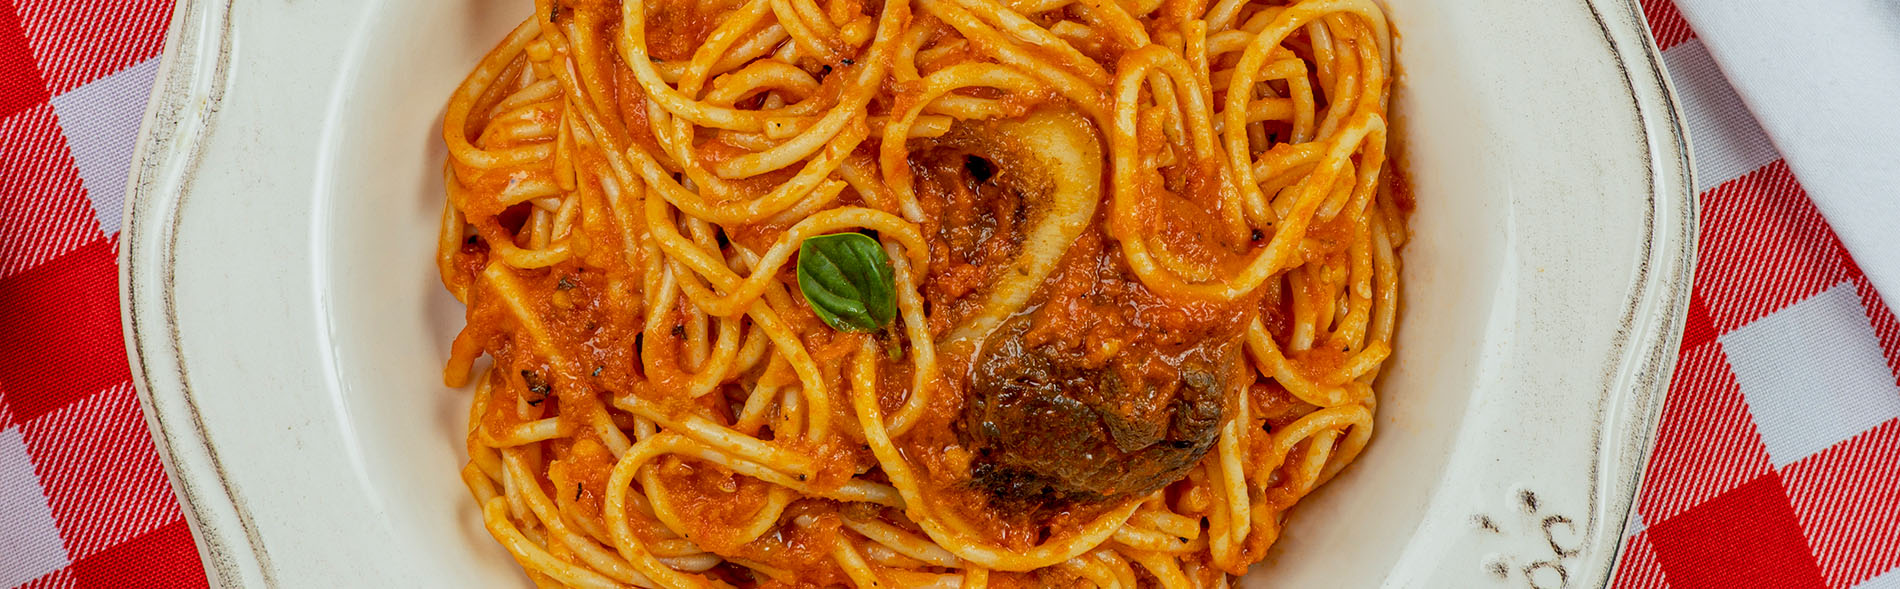 receta de spaghetti con salsa napolitana y osobuco